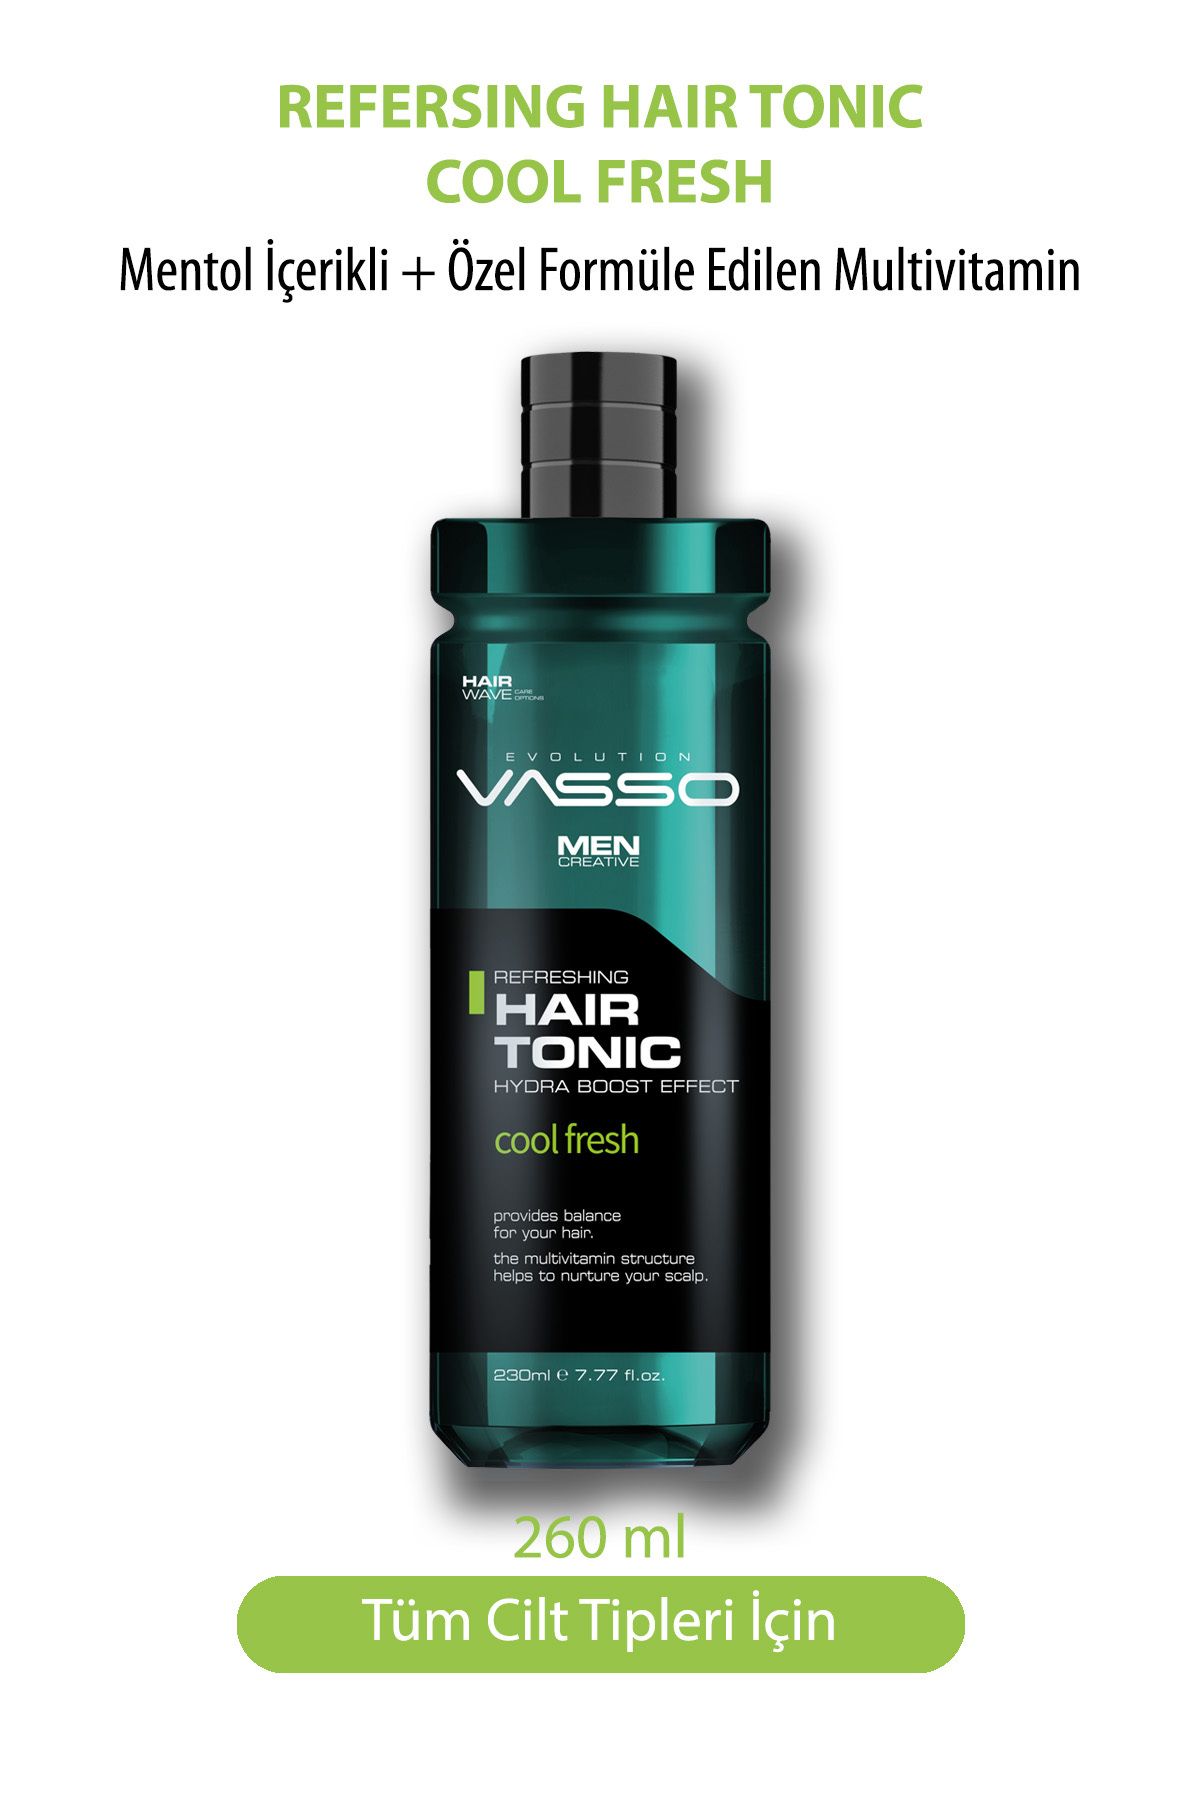 Vasso Men Mentol Ve Multivitaminli Ferahlatıcı Saç Toniği - Hair Tonic 260 ml